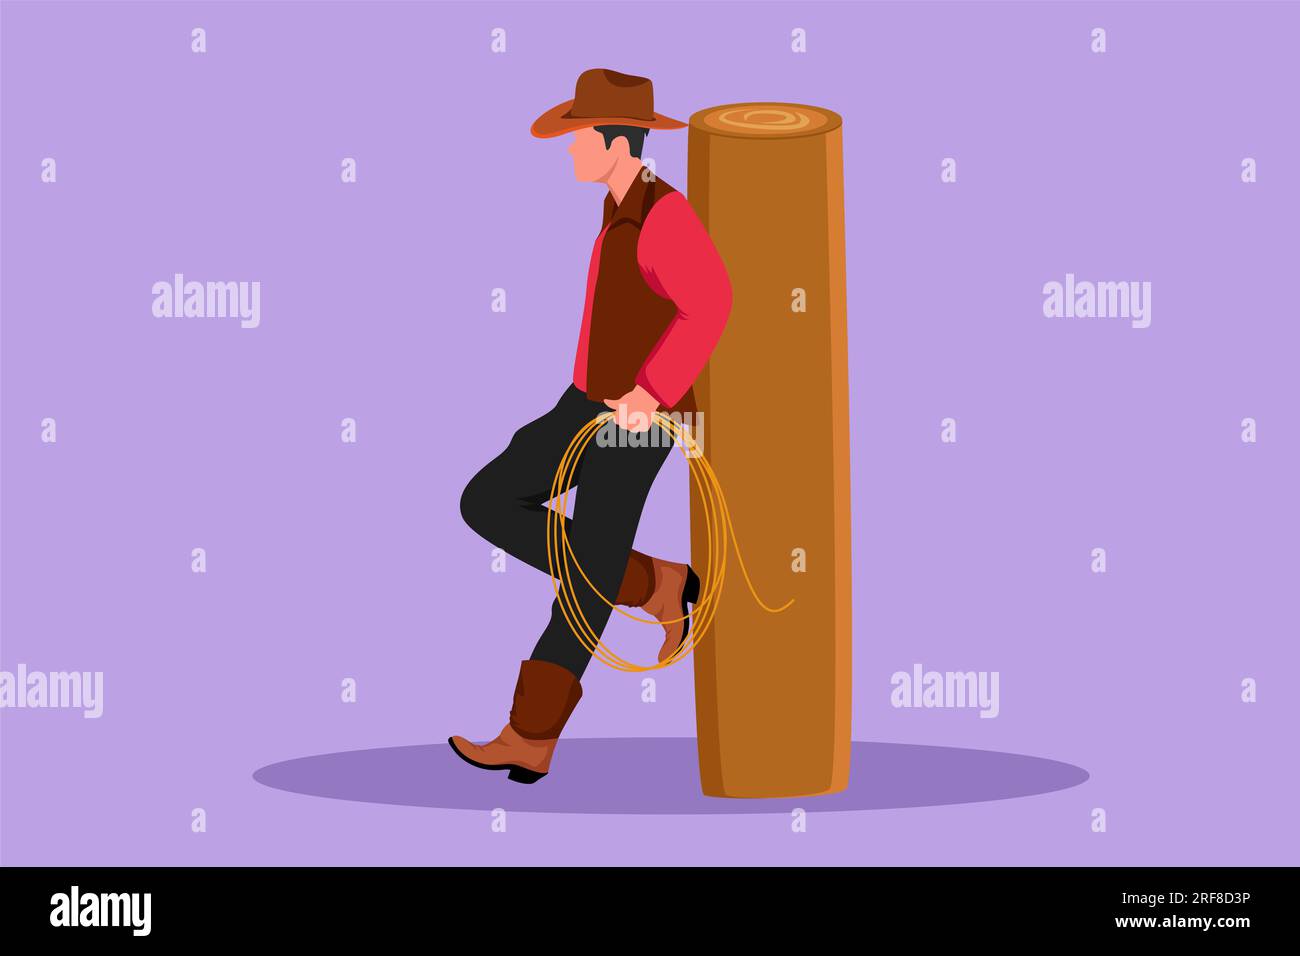 Dessin de style plat dessin de dessin occidental homme relaxant avec chapeau de cow-boy et lasso appuyé sur une clôture en bois. Style de vie stylisé des cow-boys américains chez le bétail Banque D'Images